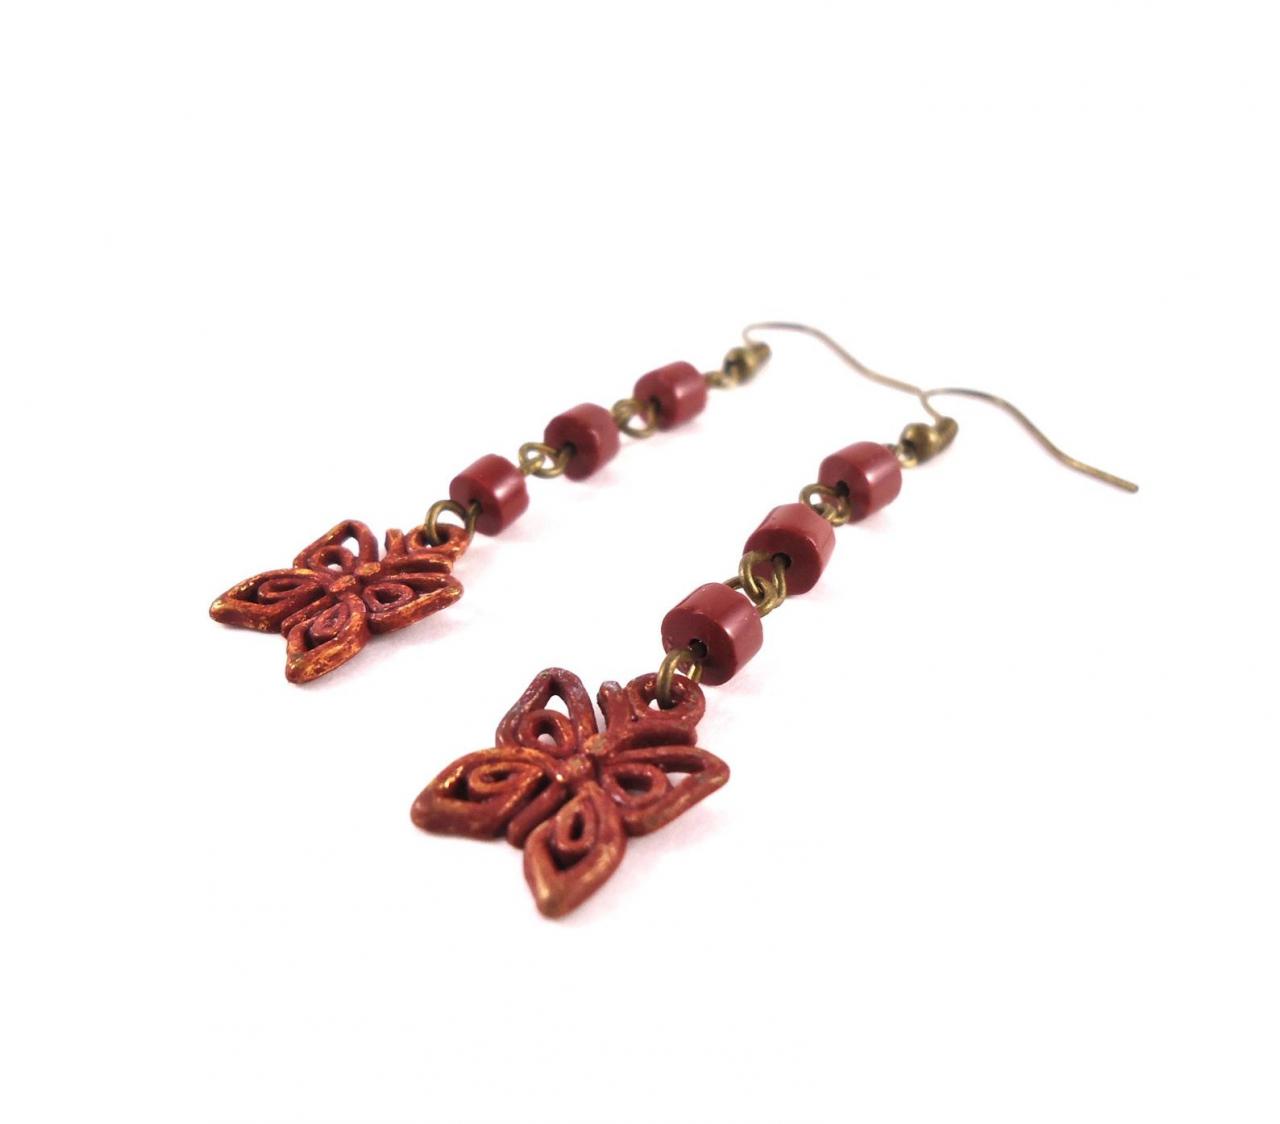 Red Butterfly Earrings - Red Tribal Earrings - Long Summer Earrings - Long Rustic Earrings - Red Butterfly Jewelry - Boho Red Earrings